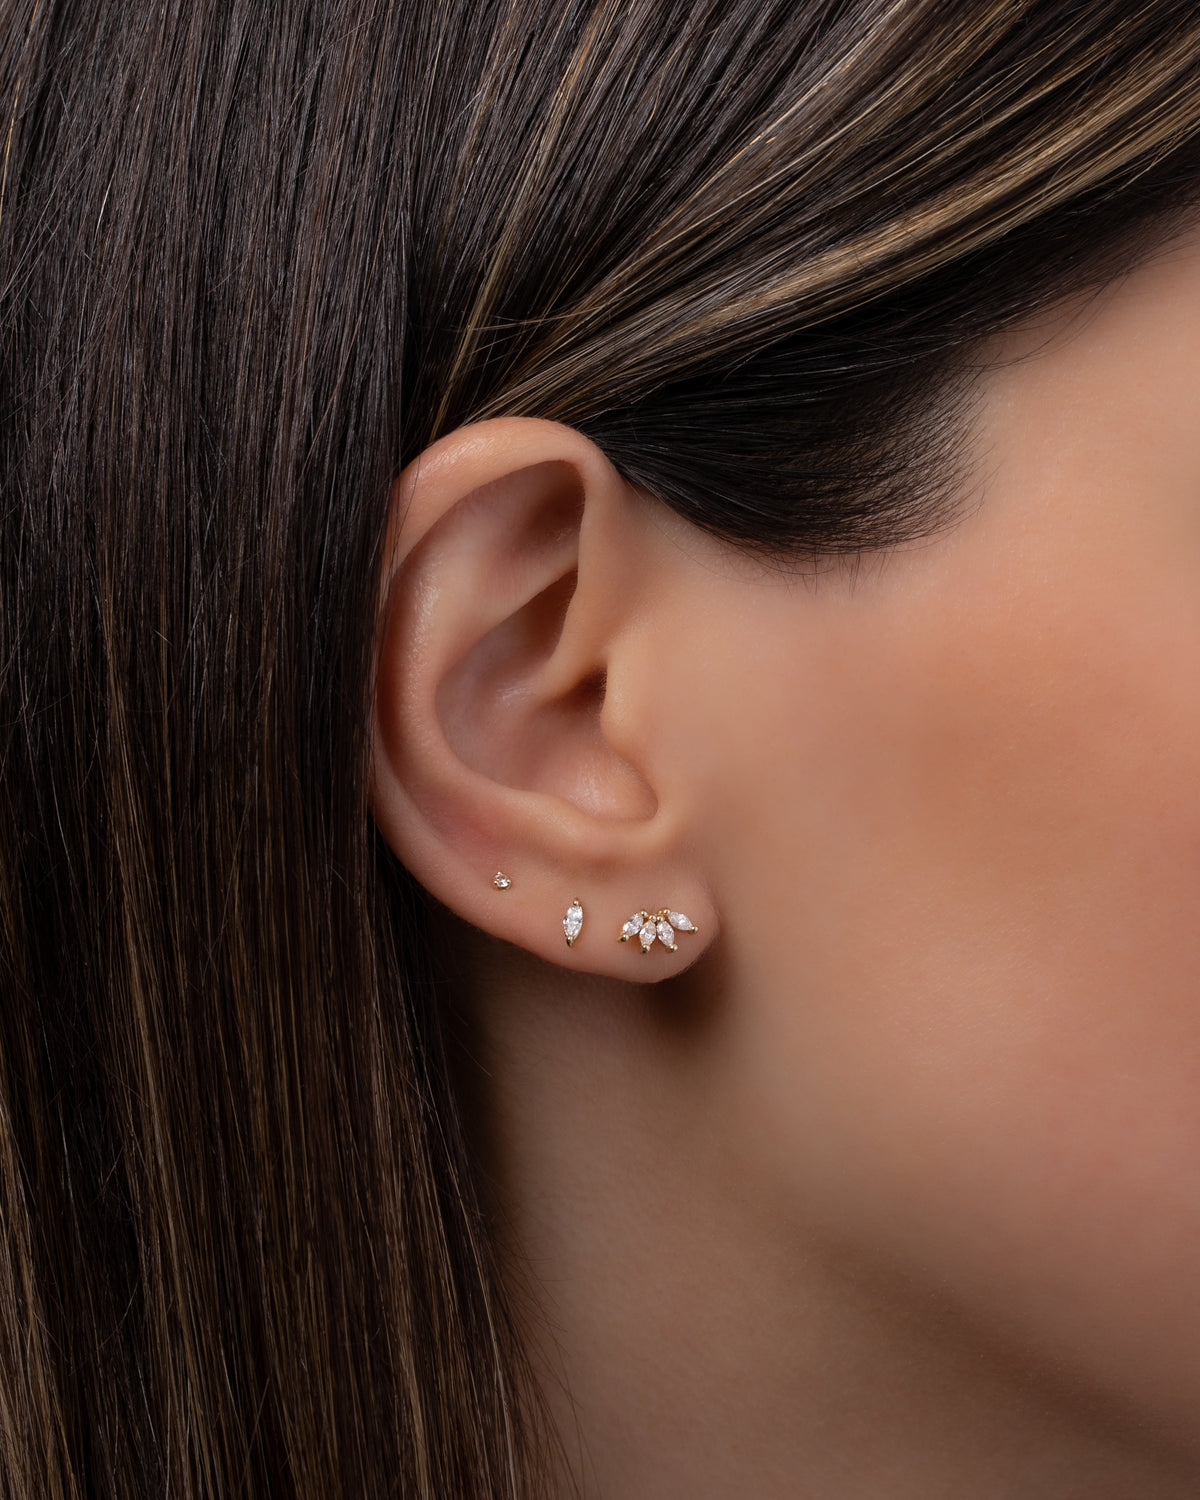 4 Marquise Diamond Stud Earrings